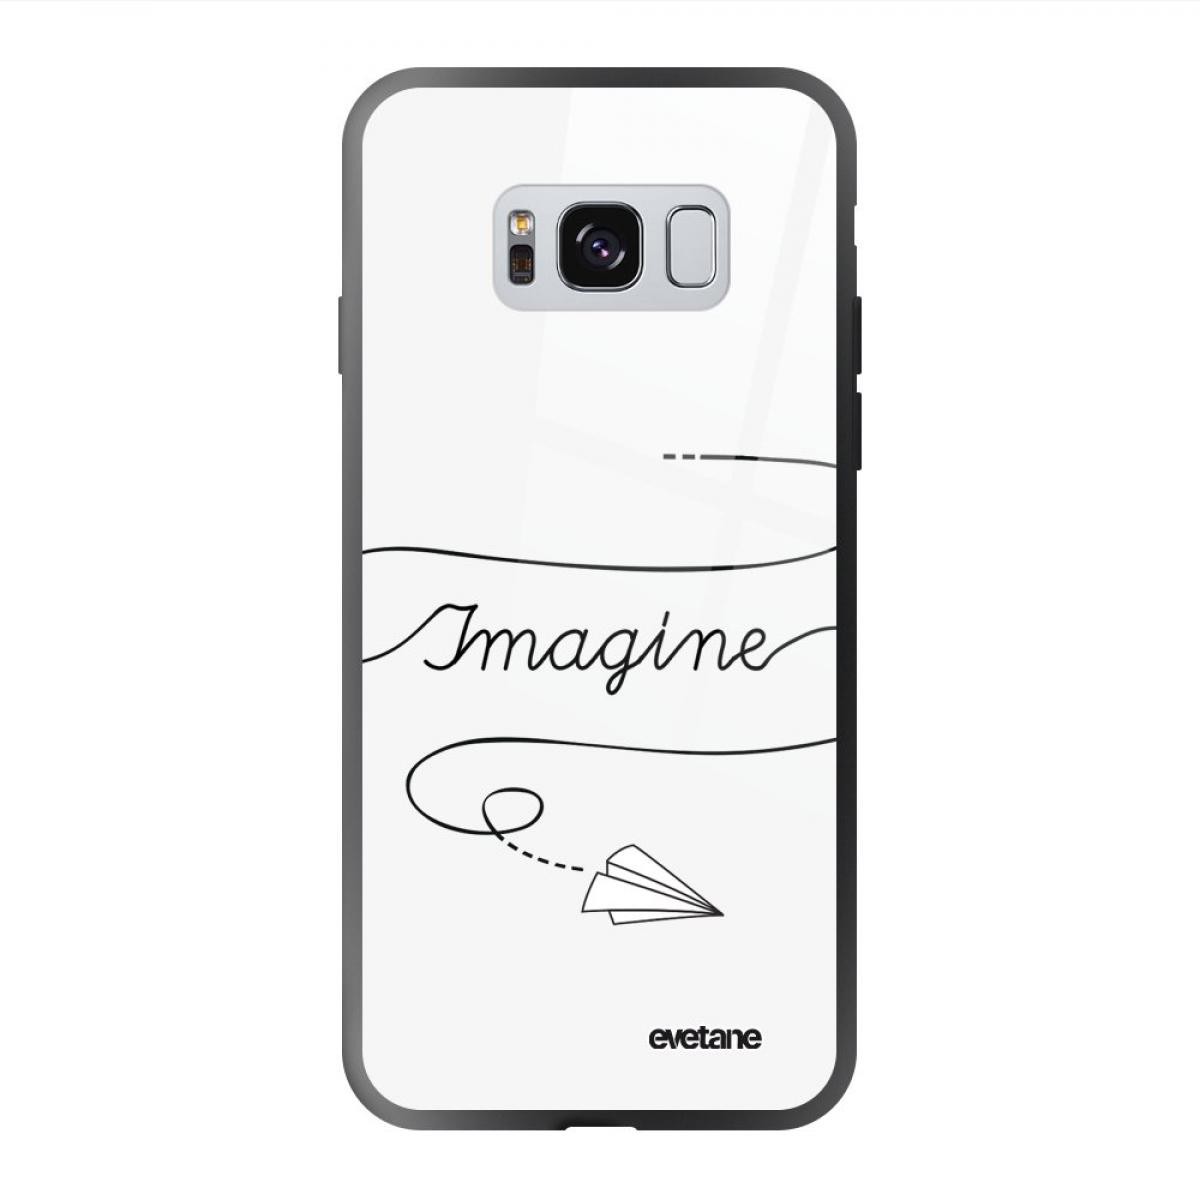 Evetane - Coque Galaxy S8 soft touch noir effet glossy Imagine Design Evetane - Coque, étui smartphone